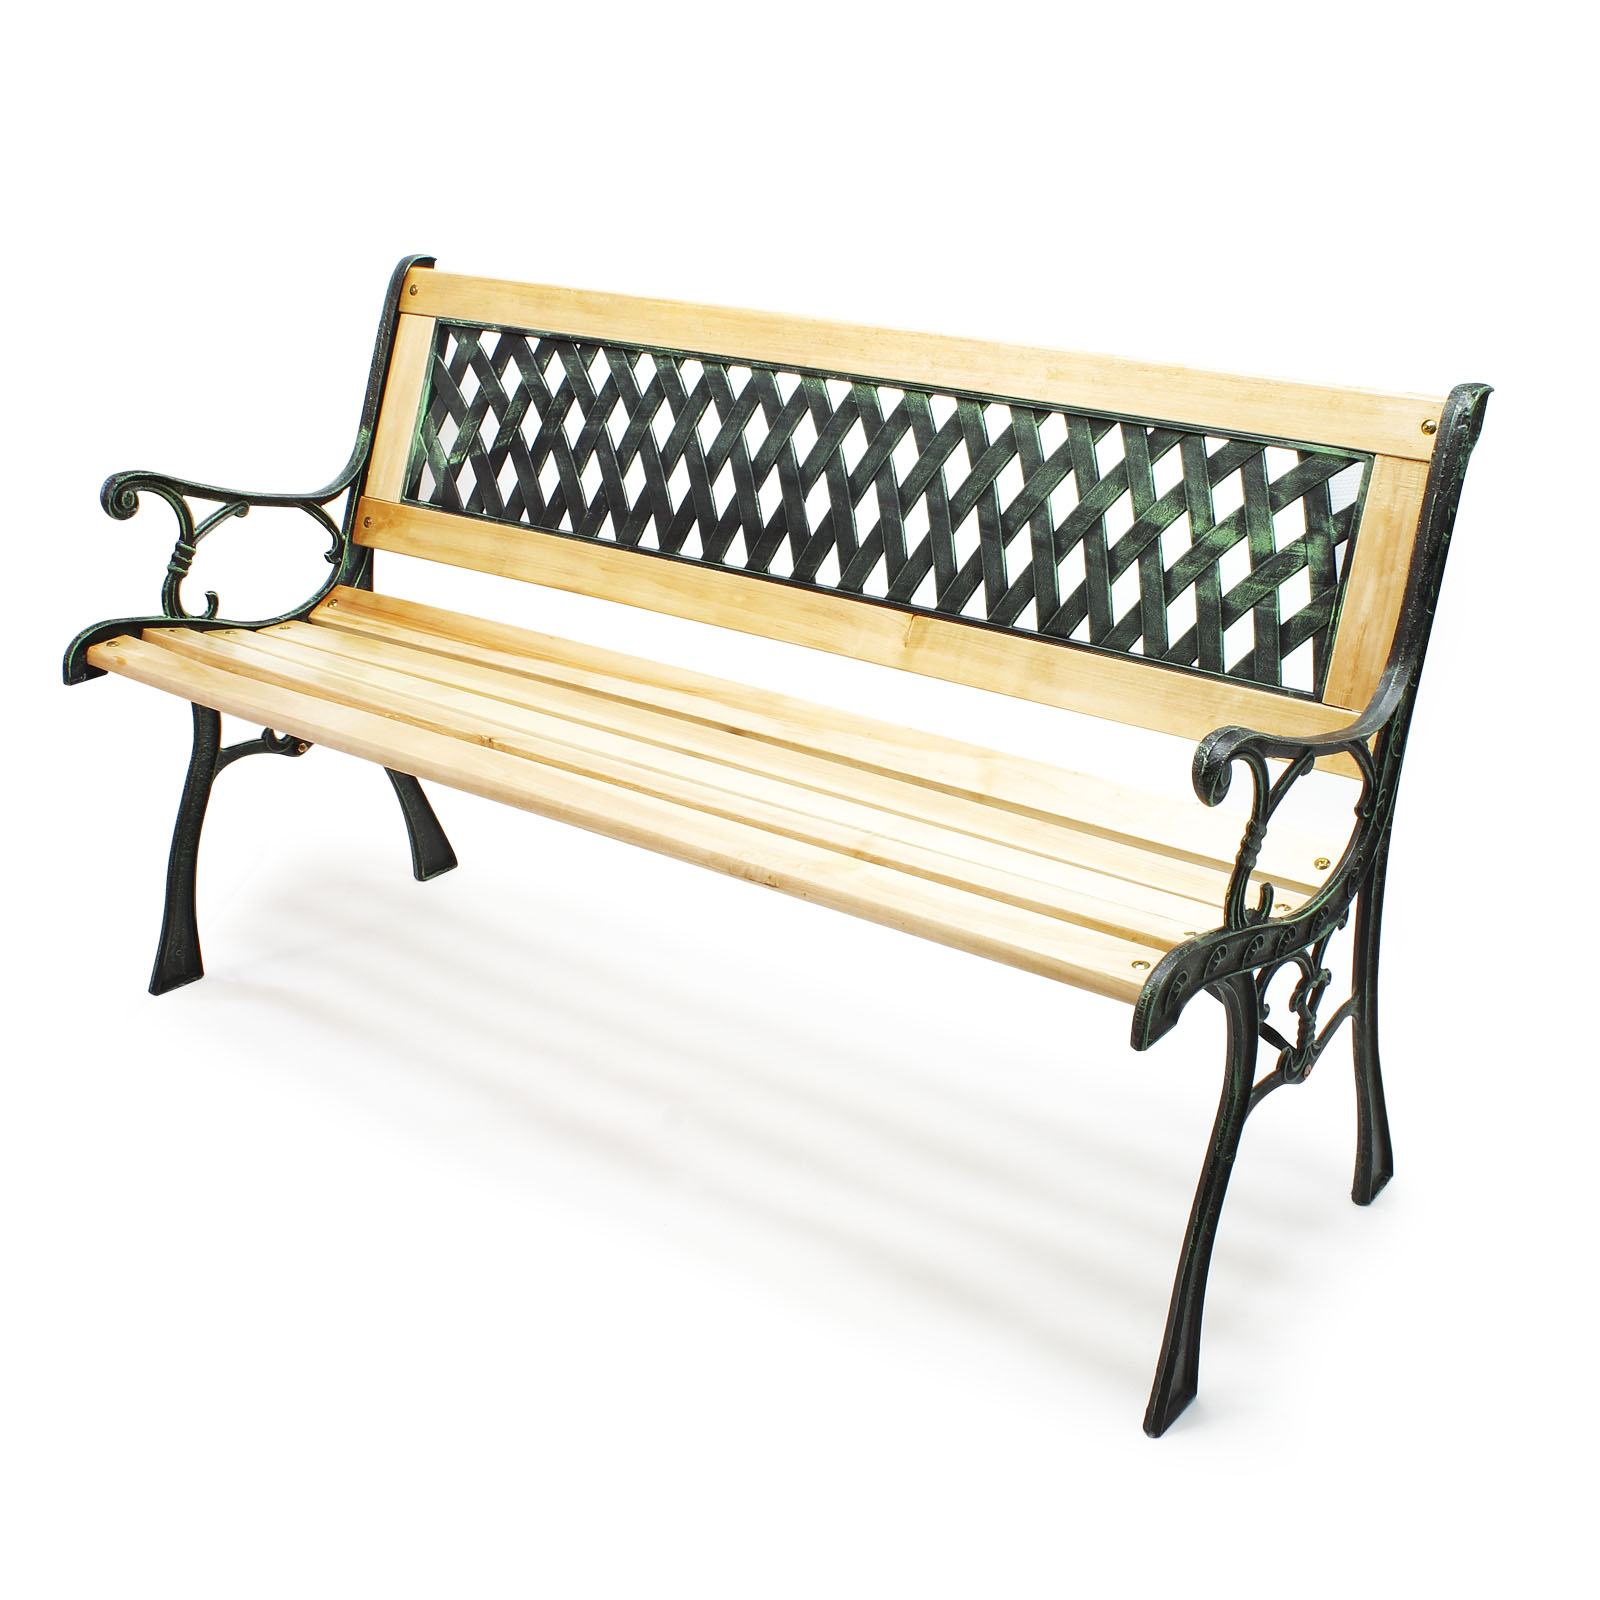 Likeur lancering Derbevilletest Garden bench park seat Inge wood cast iron lattice-patterned